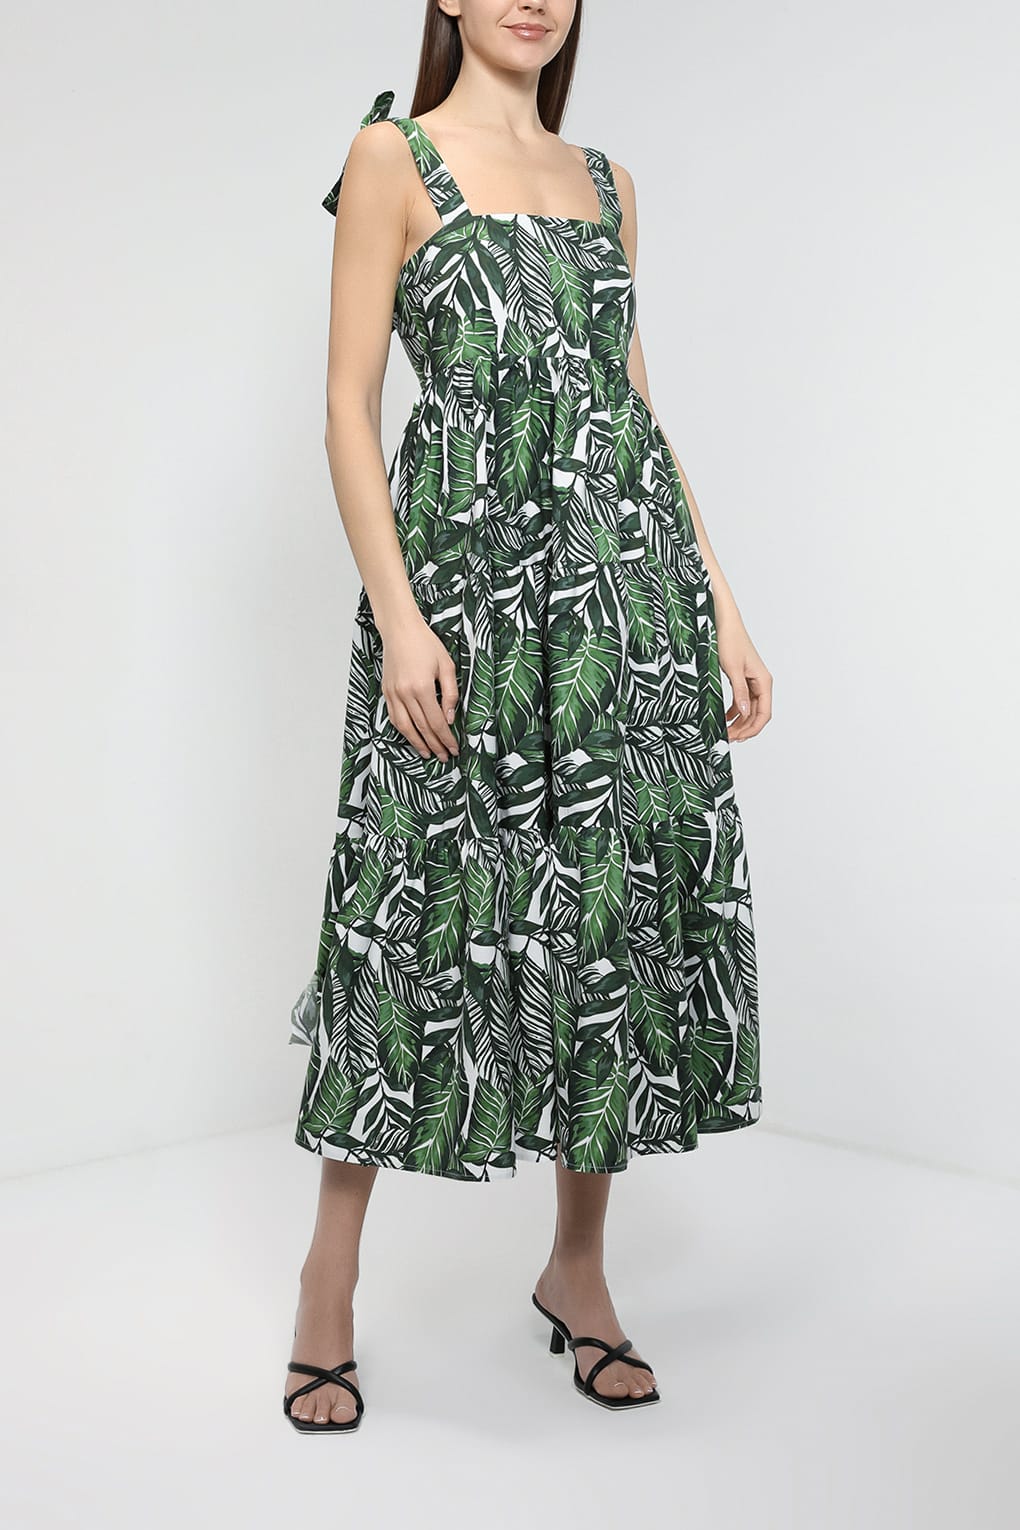 Платье женское Belucci BL23045251 зеленое S